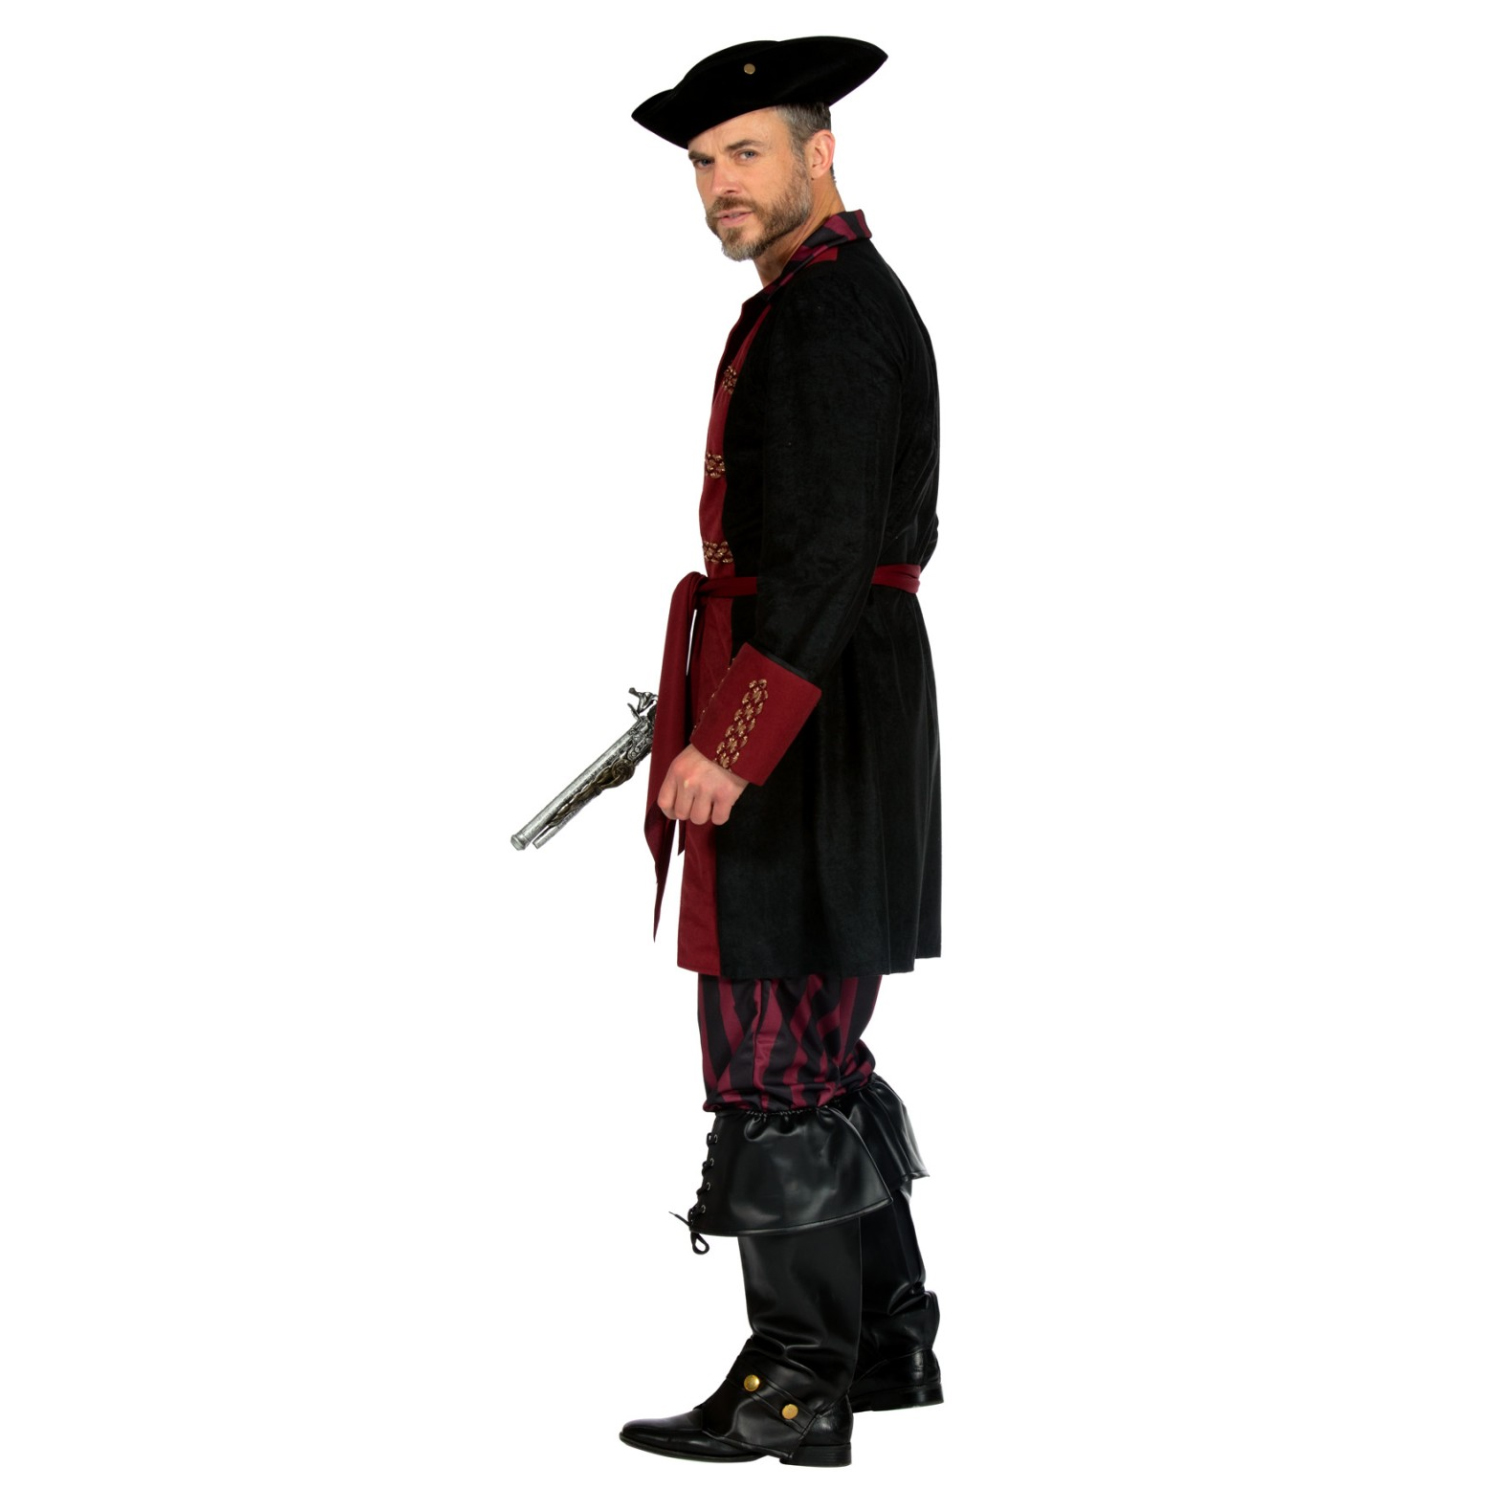 NEU Herren-Kostüm Pirat, burgund-schwarz, Gr. S Bild 2